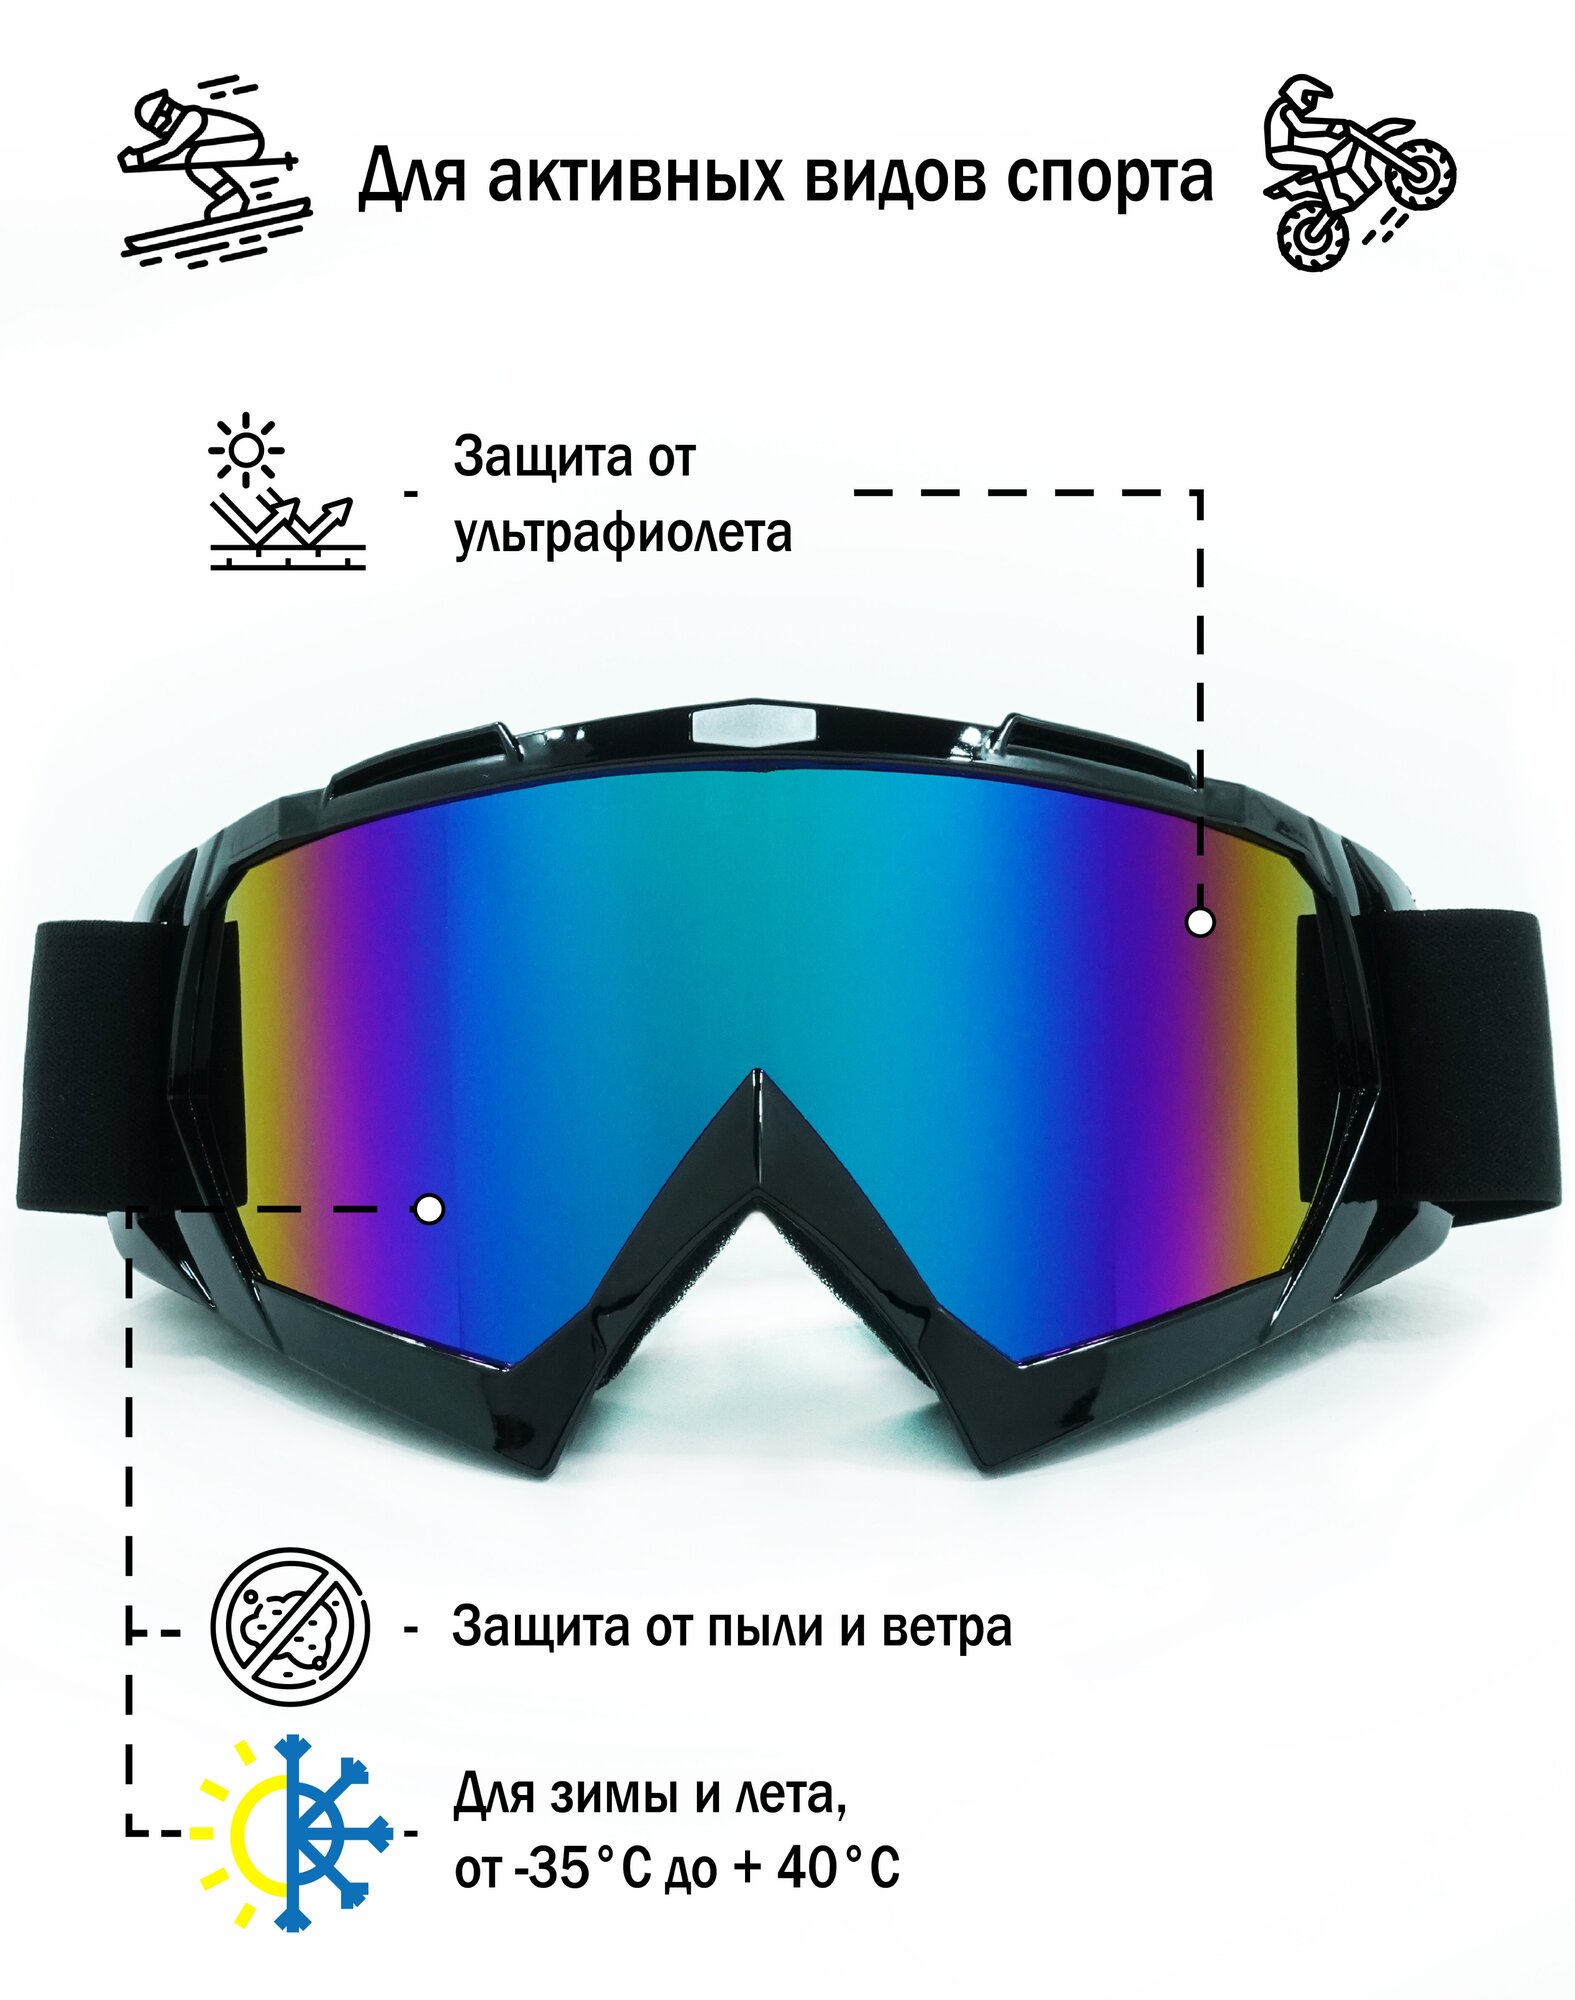 Мото очки горнолыжные очки маска горнолыжная маска мотоочки для кроссового шлема и снегохода кроссовые очки